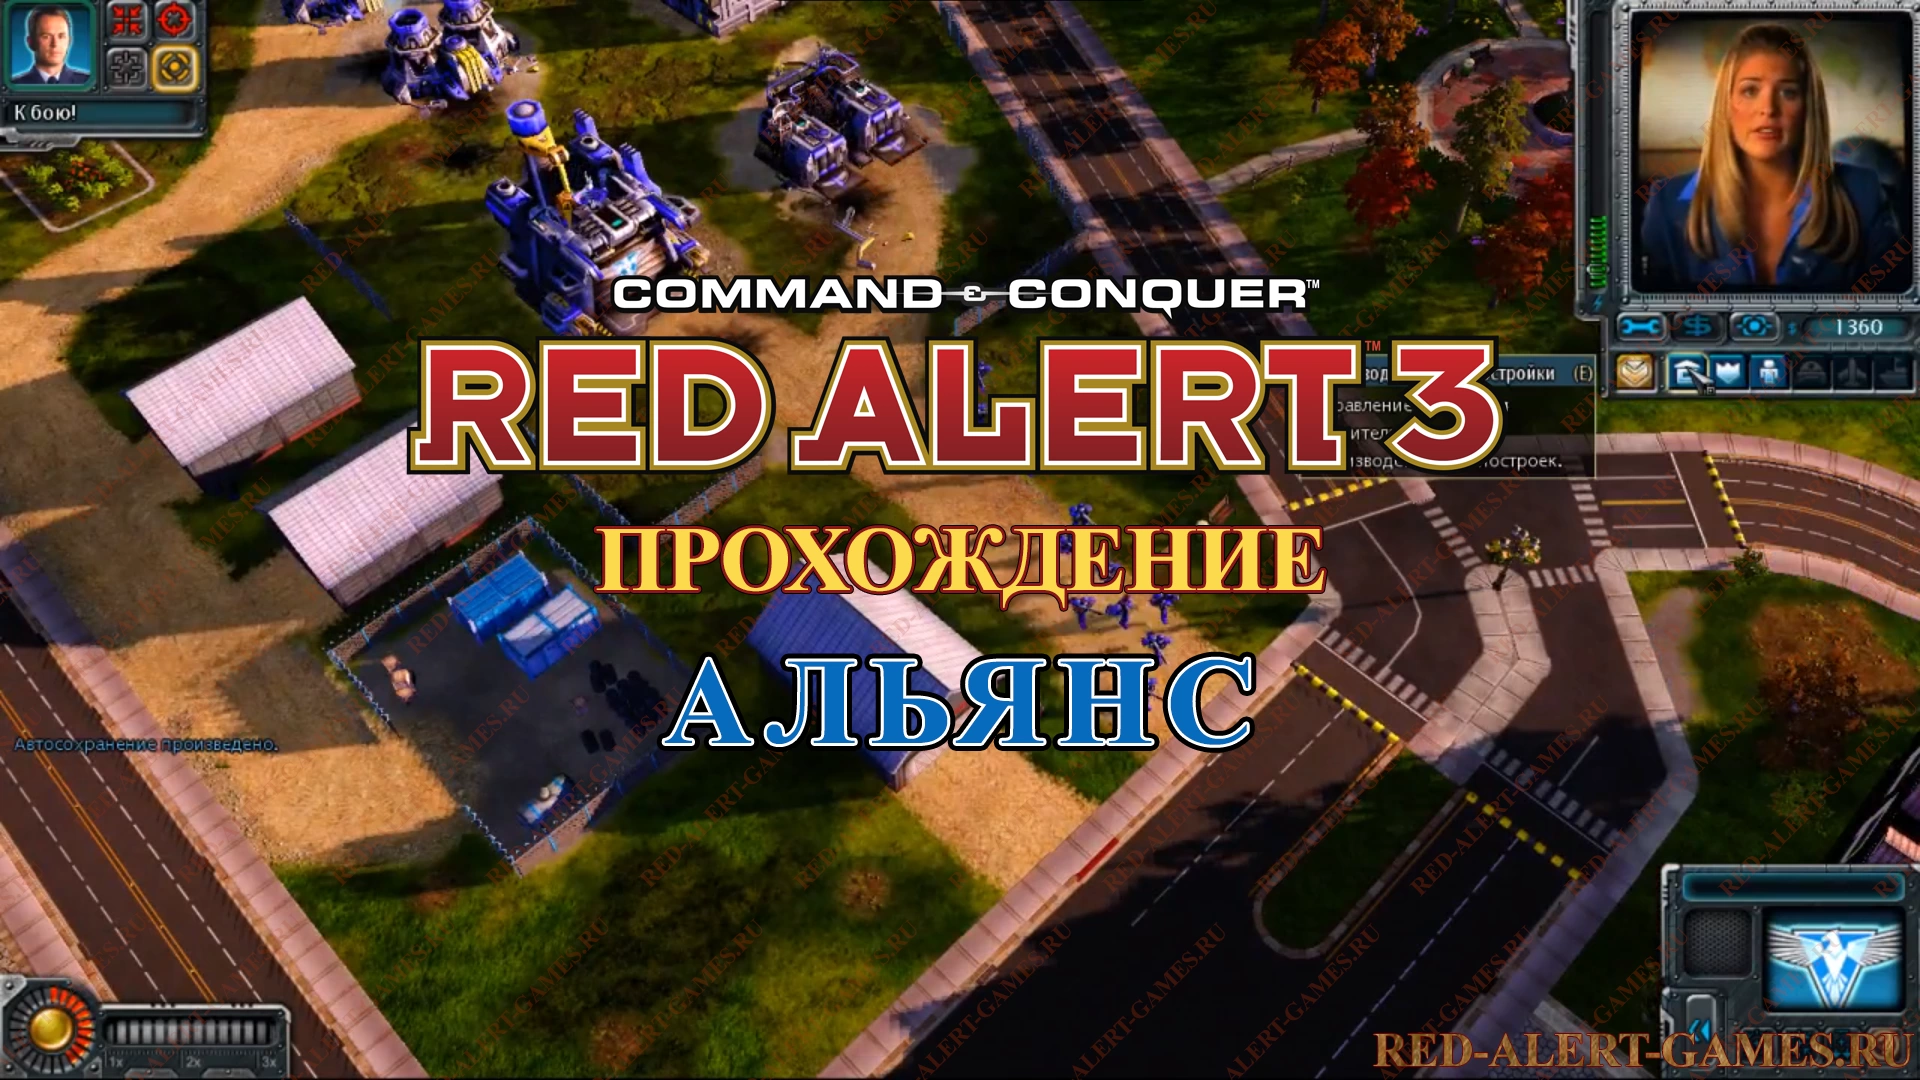 Red Alert 3 Прохождение Альянс